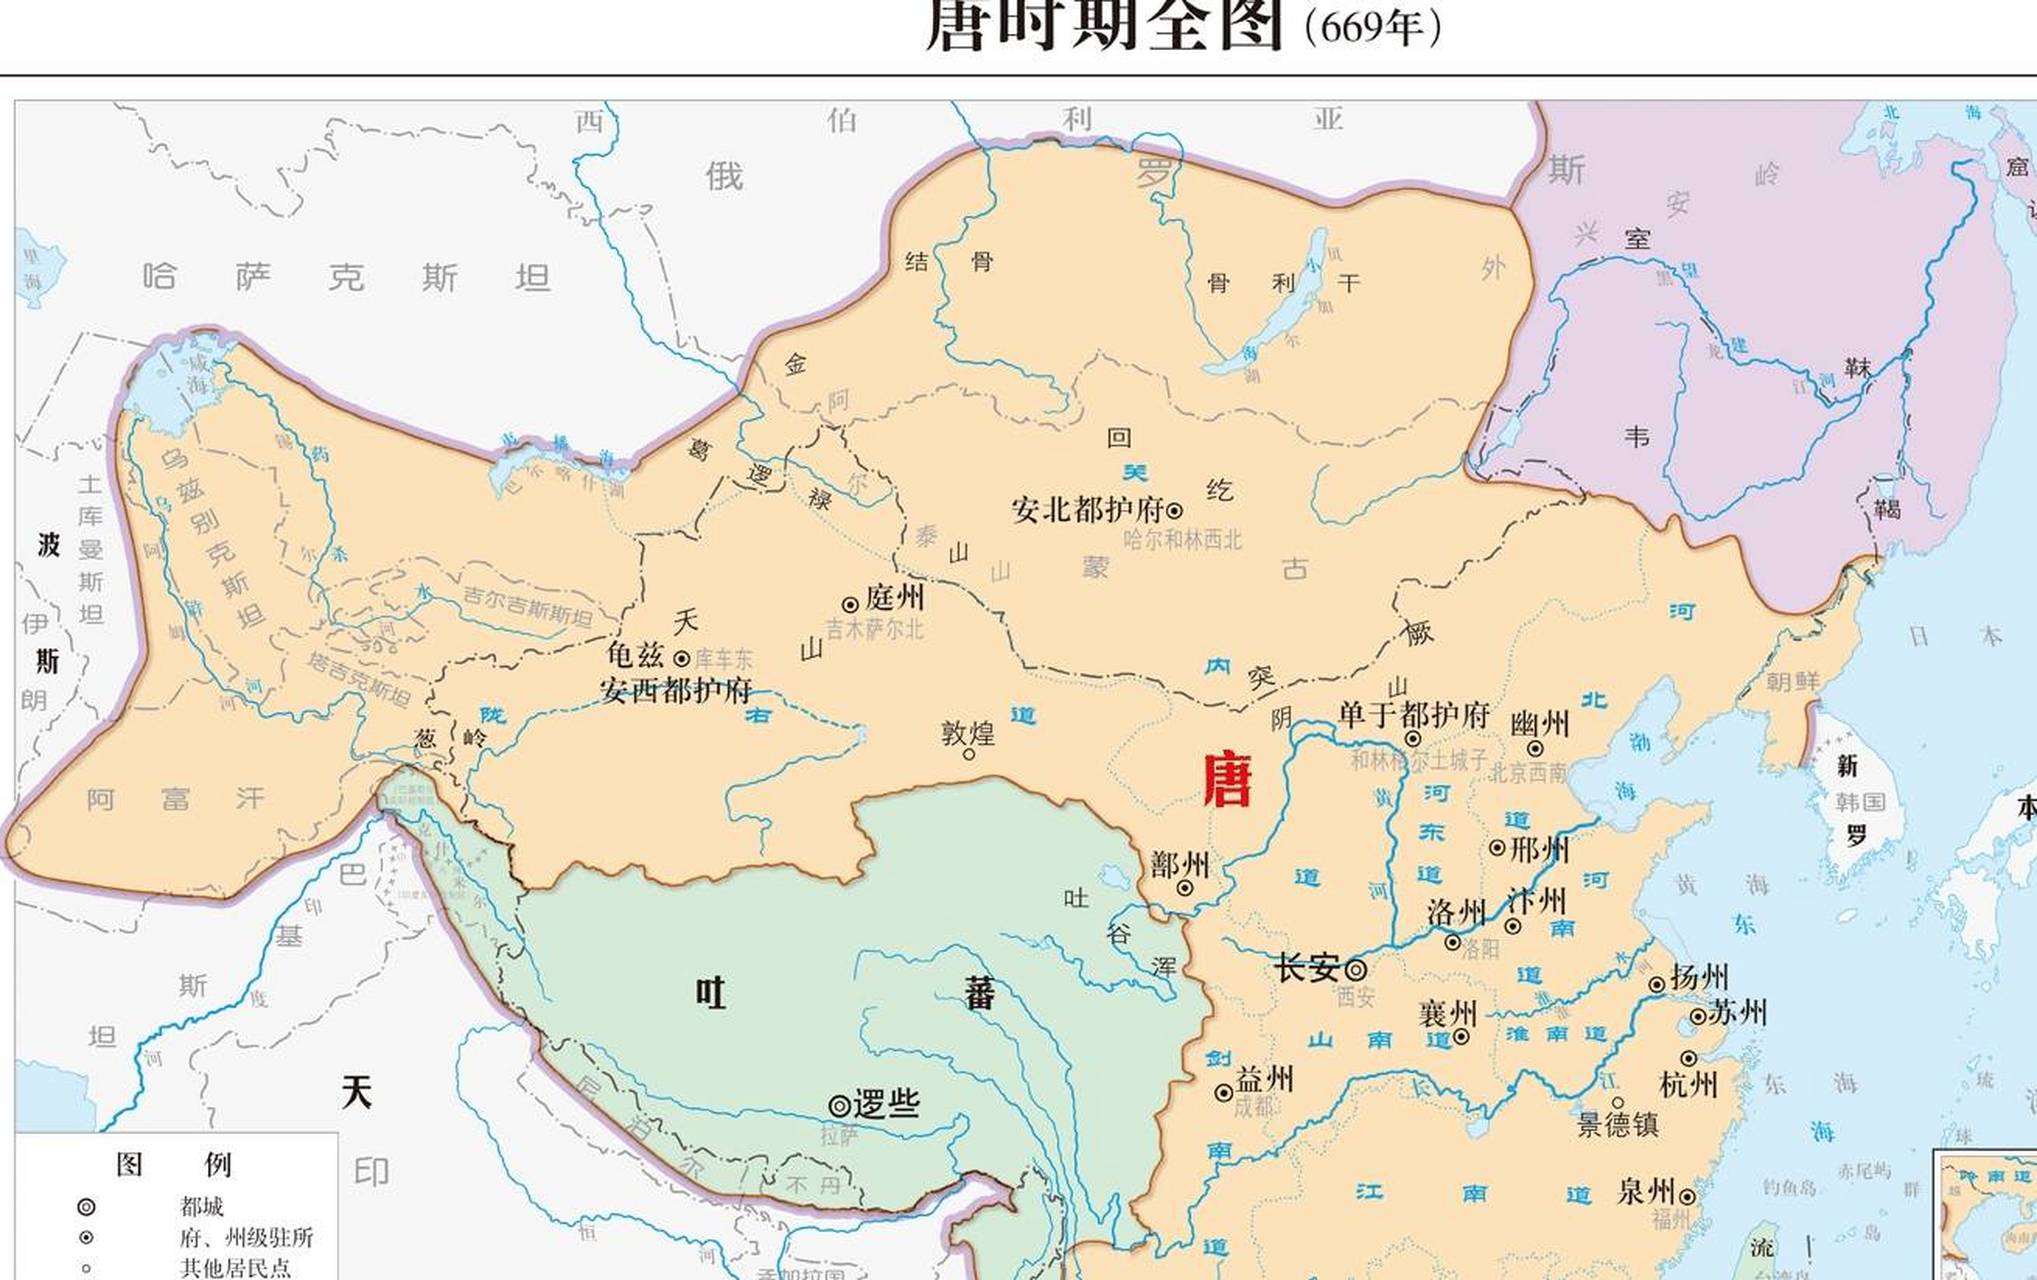 唐朝的疆域三面都靠着水域, 东到大海, 西到 咸海, 南到南海, 东北到